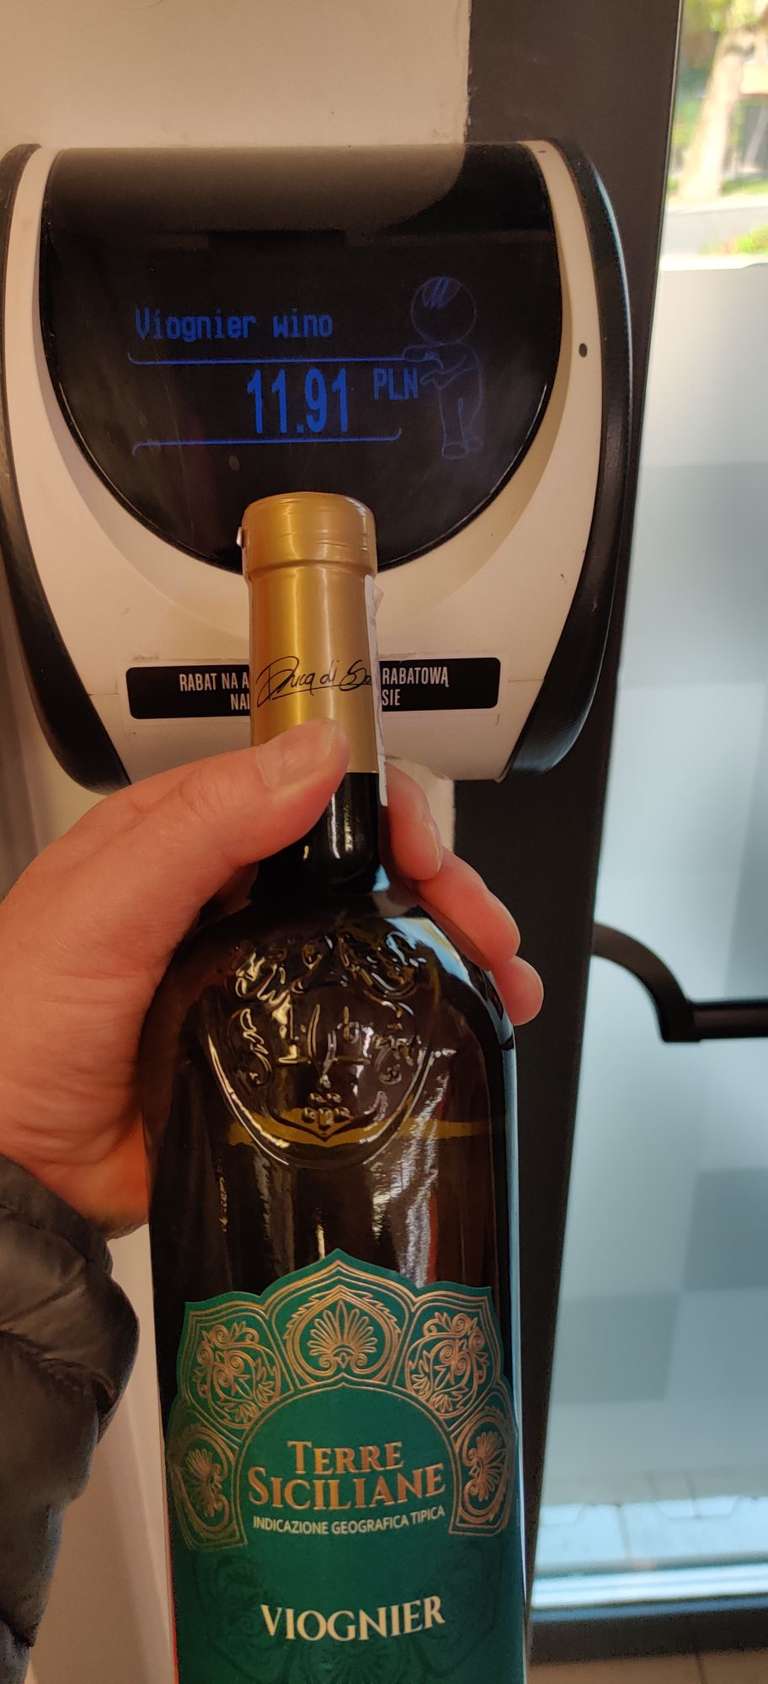 Wino białe, półwytrawne Viognier Terre Siciliane Duca di Sasseta 12,5%, butelka 0,75L. LIDL